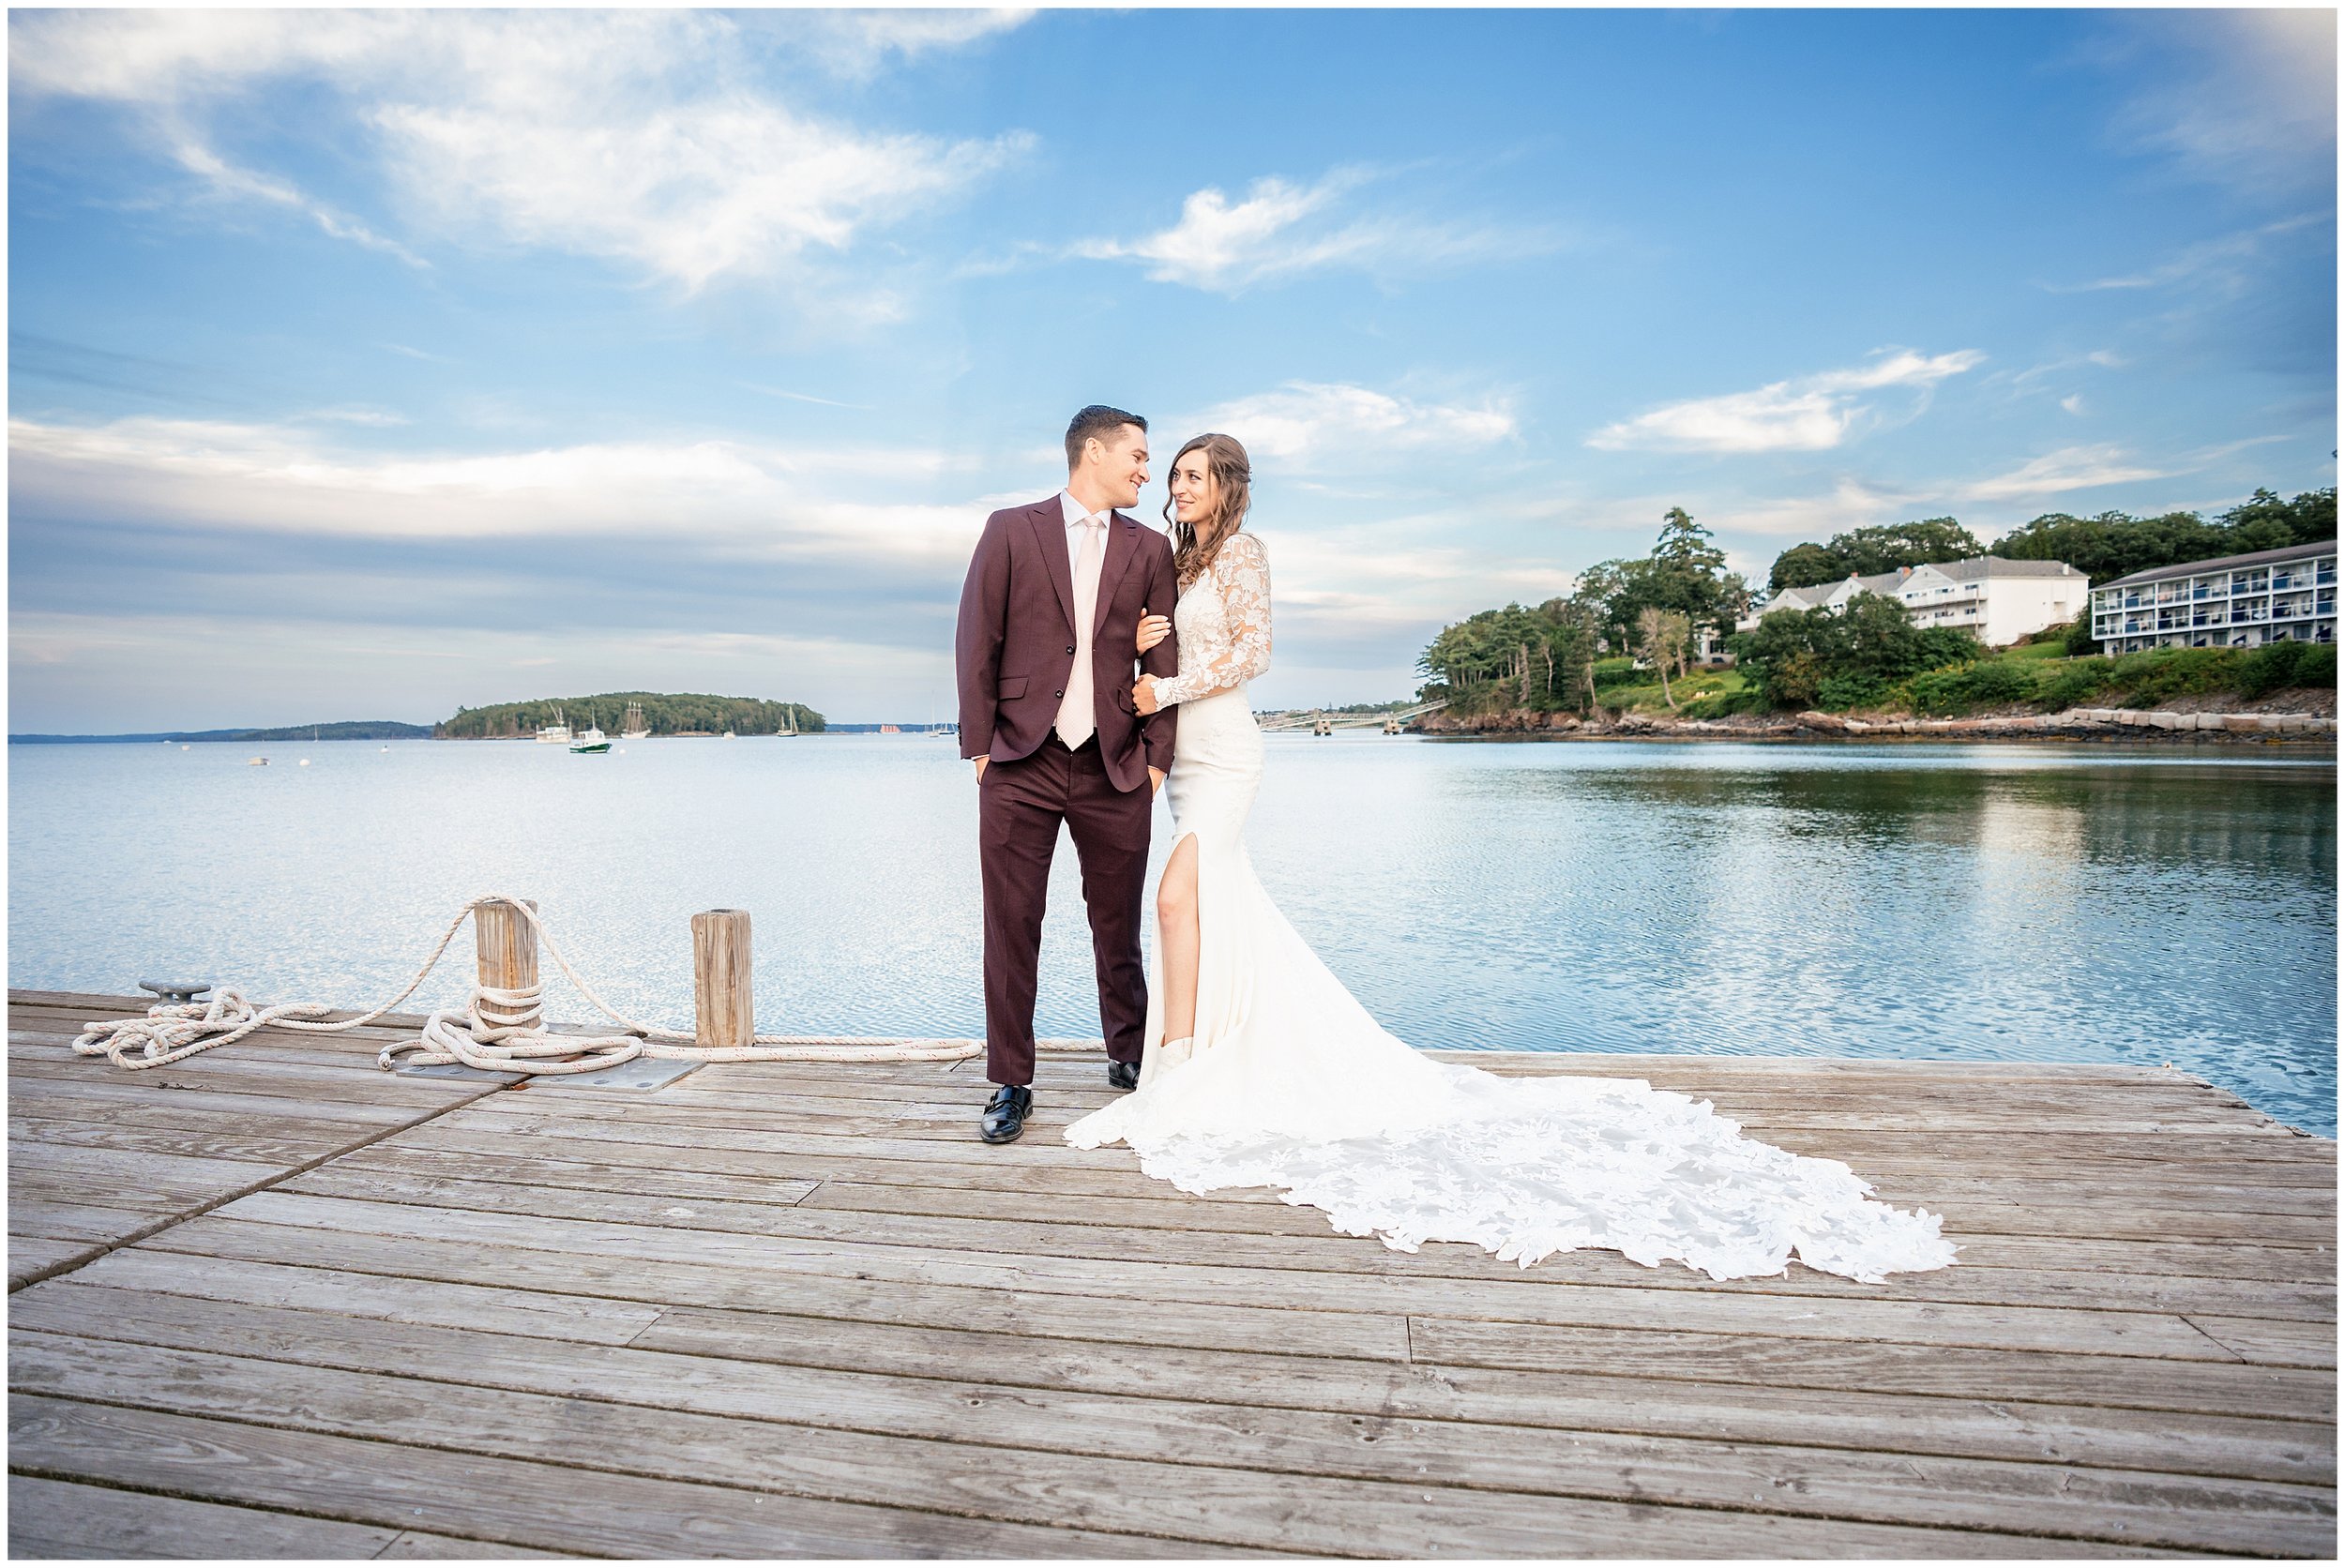 Acadia National Park Wedding Photographers, Bar Harbor Wedding Photographers, Two Adventurous Souls- 082423_0056.jpg